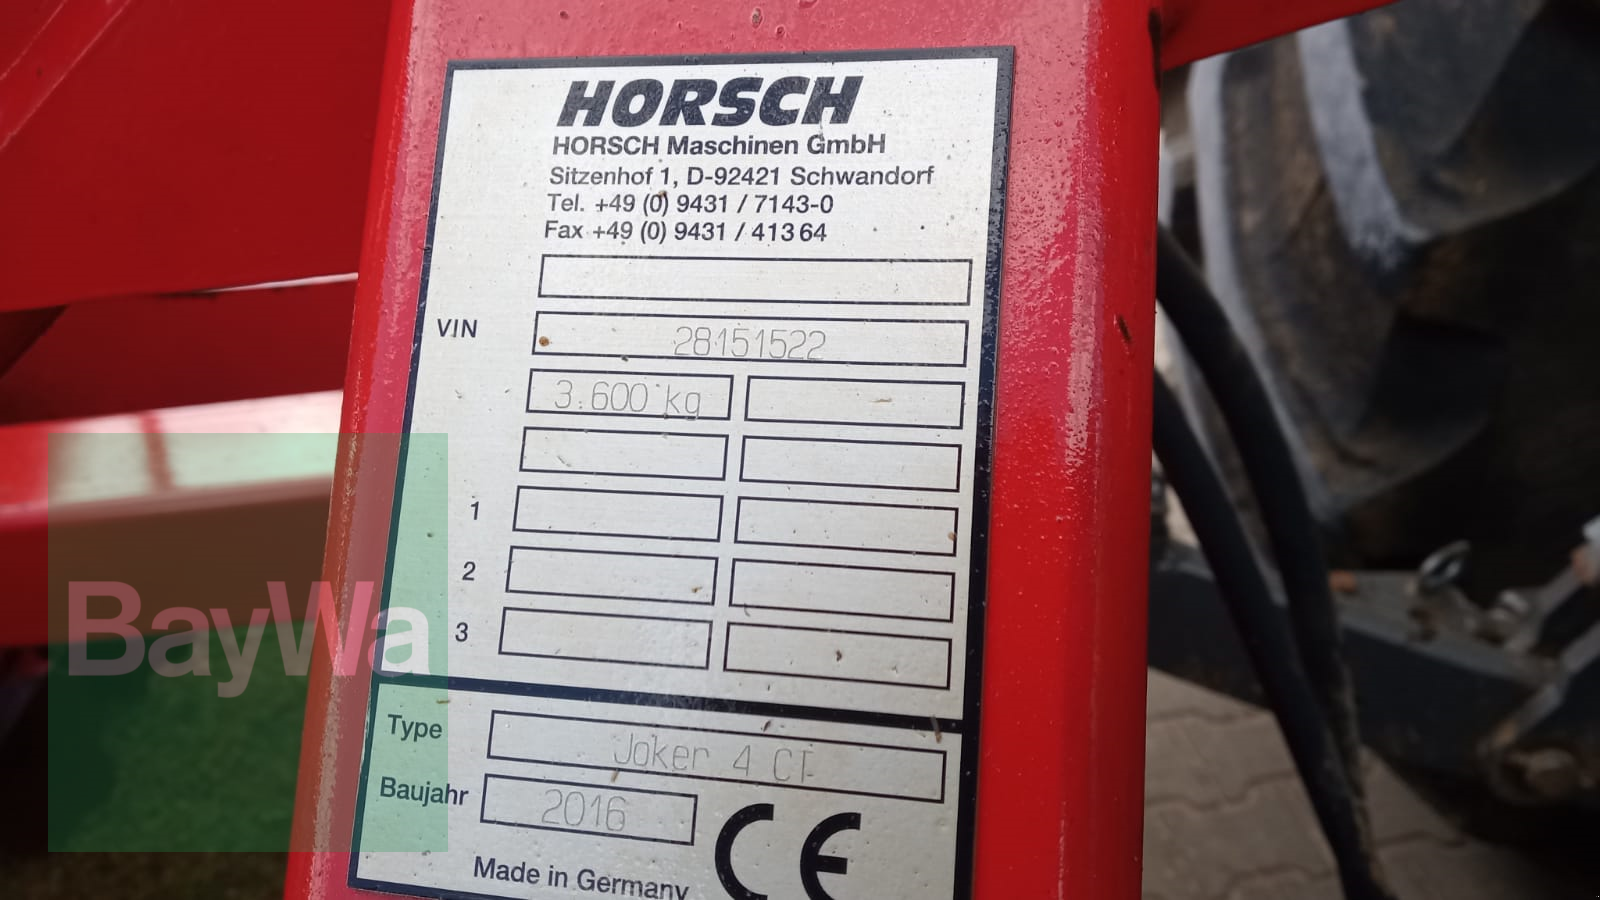 Scheibenegge des Typs Horsch Joker 4 CT, Gebrauchtmaschine in Kunde/0151-16105410 (Bild 4)